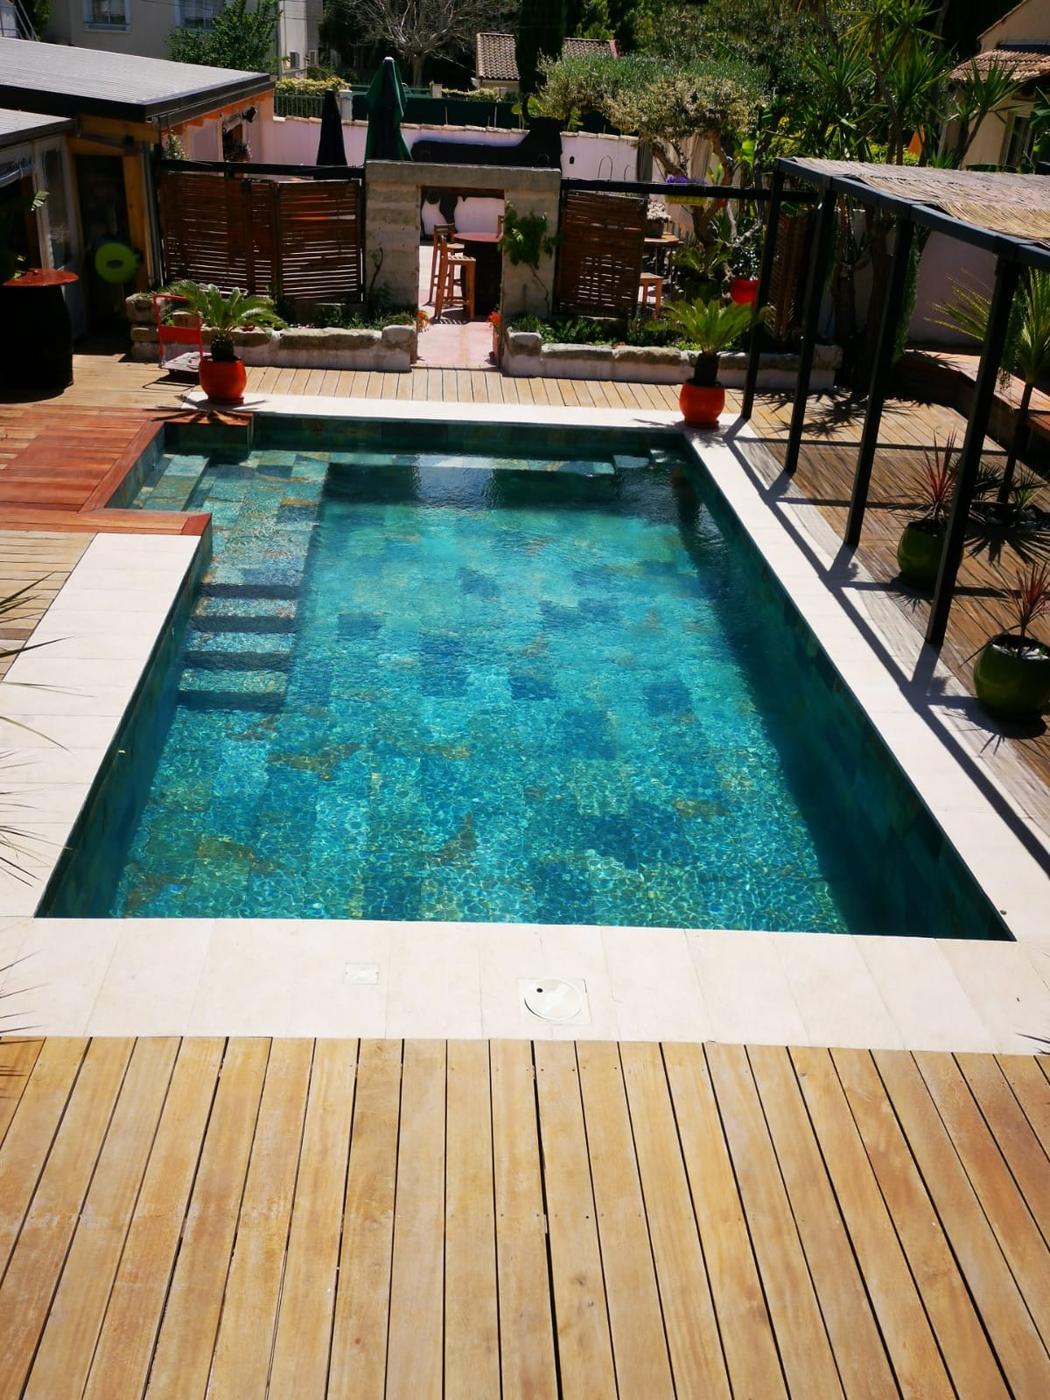 Carrelage aspect pierre multicouleur 30x60 cm sur une terrasse bois tropical avec piscine et végétation environnante